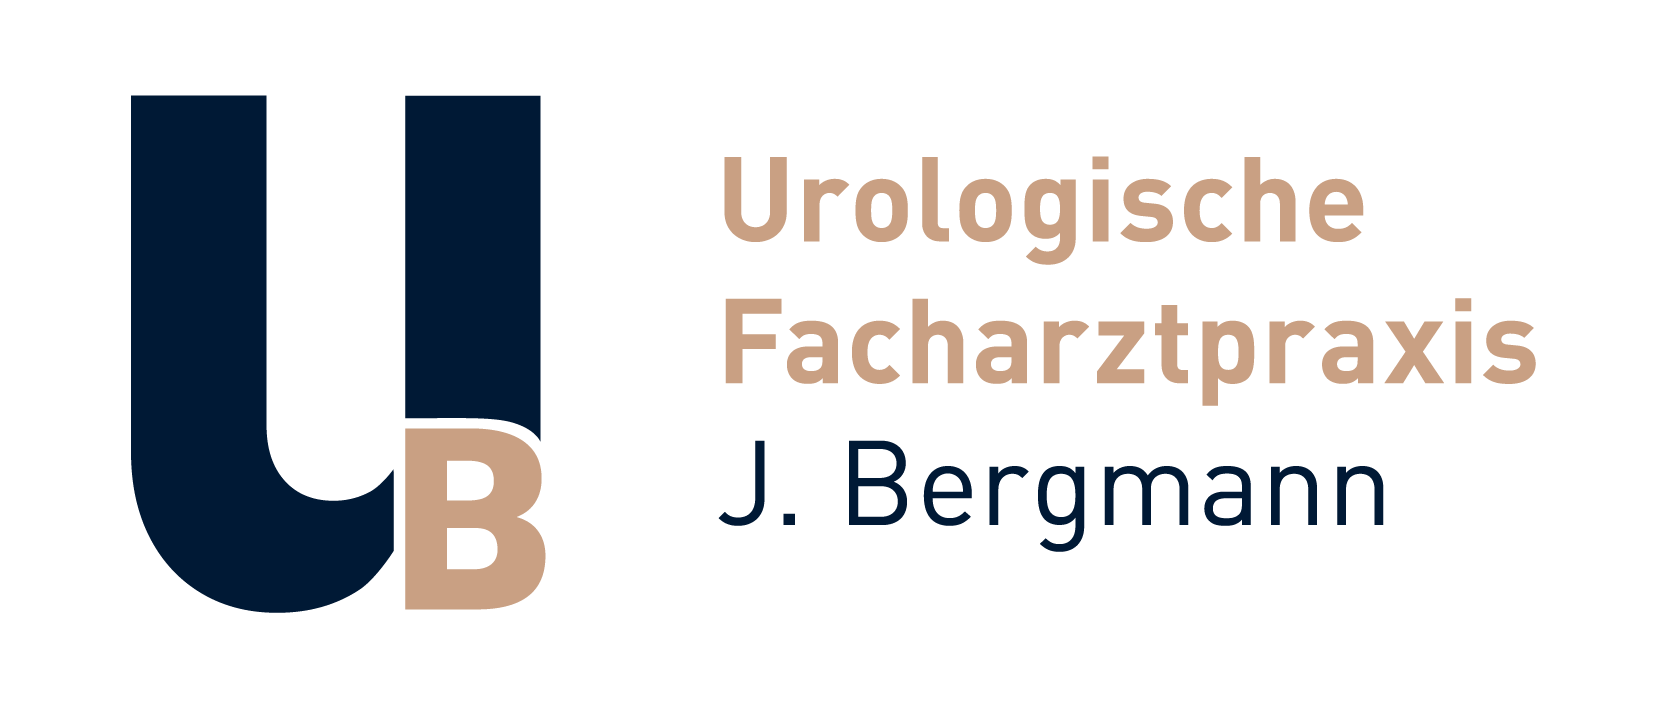 Urologische Facharztpraxis J. Bergmann